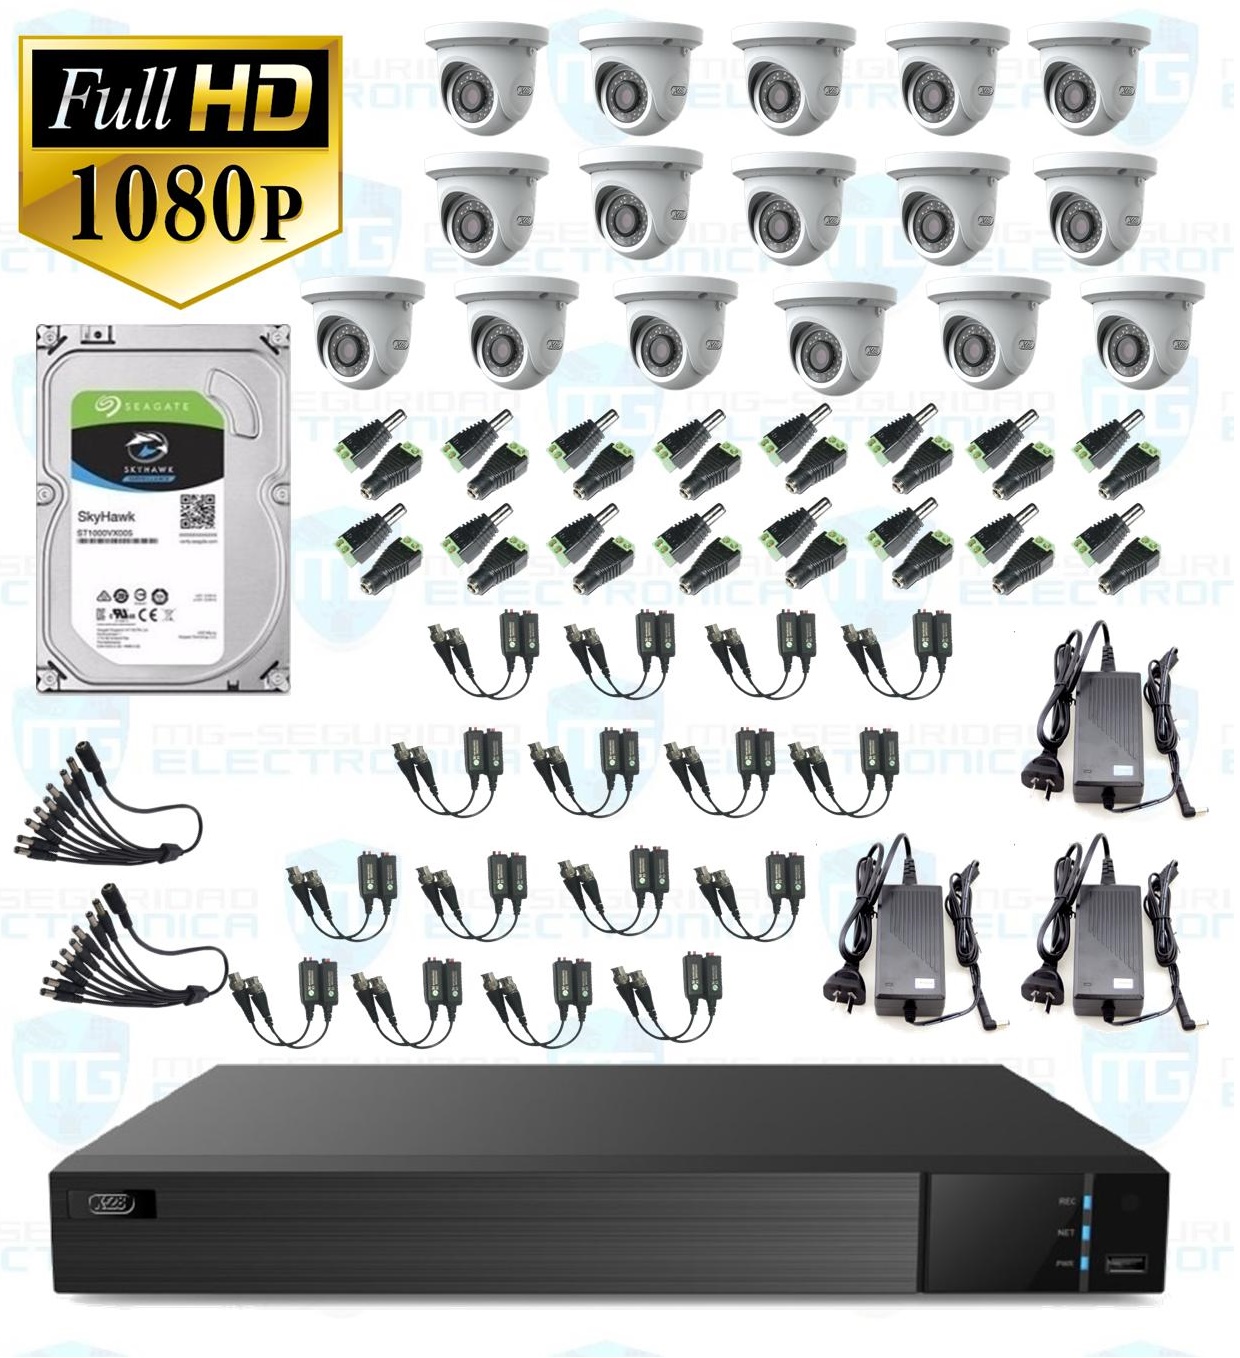 DVR, disco 4 TB, 16 cámaras minidomo, balunes, 3 fuentes y conectores.